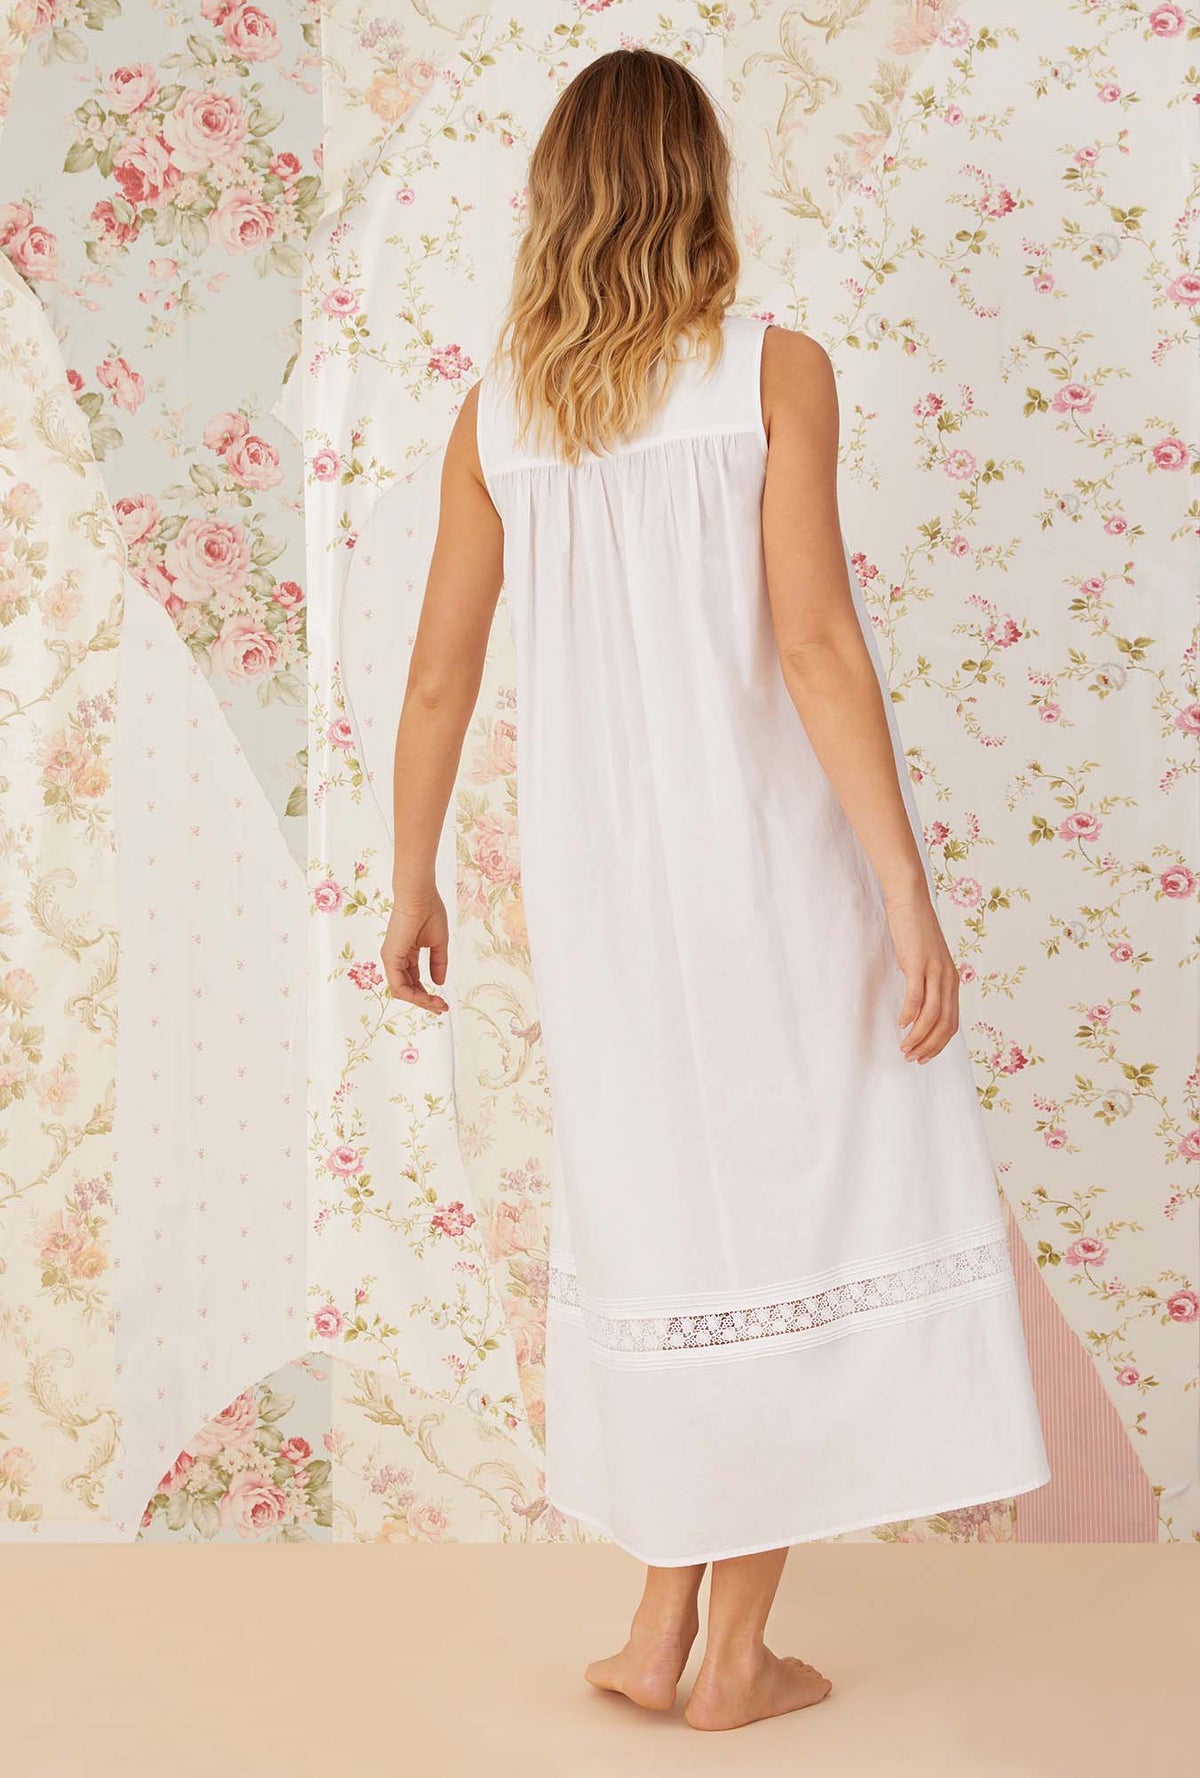 A lady wearing white sleeveless portofino ballet nightgown.